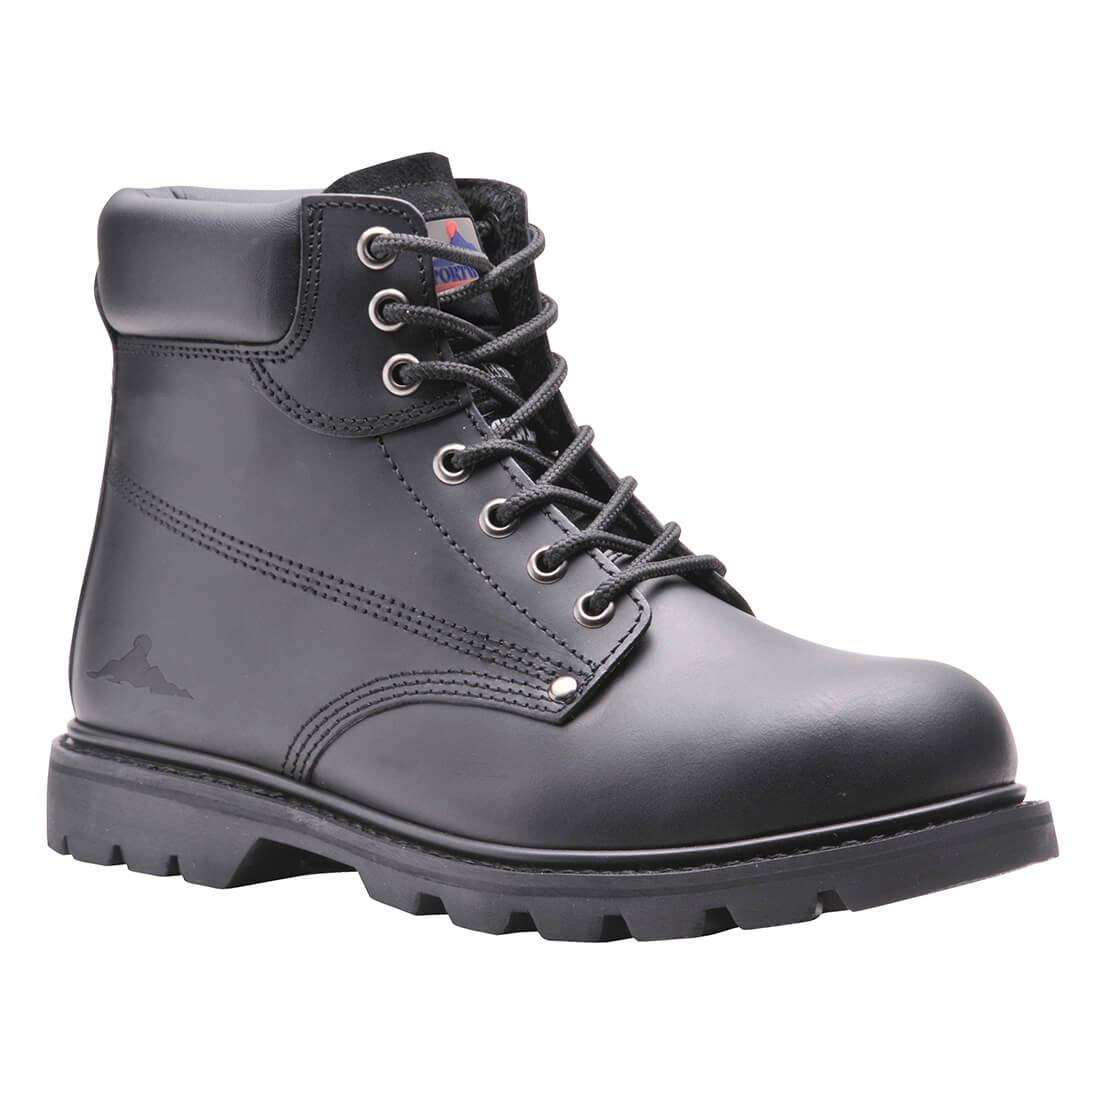 Portwest Steelite SBP HRO Welted Safety Boots Black Size 10